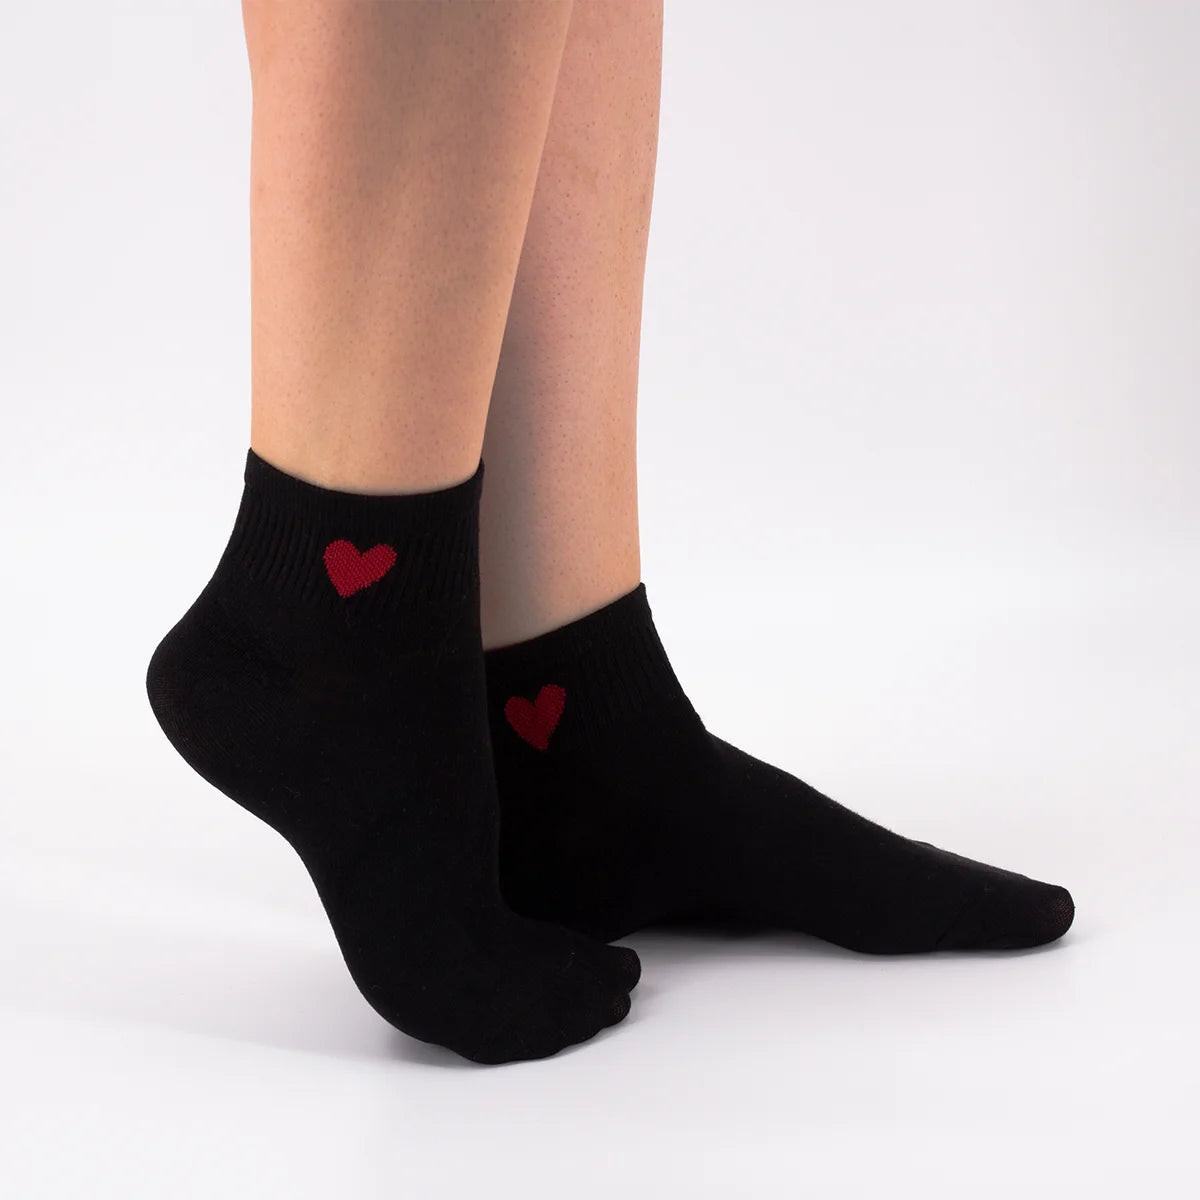 Chaussettes courtes noir adultes en coton avec un cœur sur le côté | Chaussettes abordables et de haute qualité | Un excellent choix pour les adultes qui aiment les cœurs |